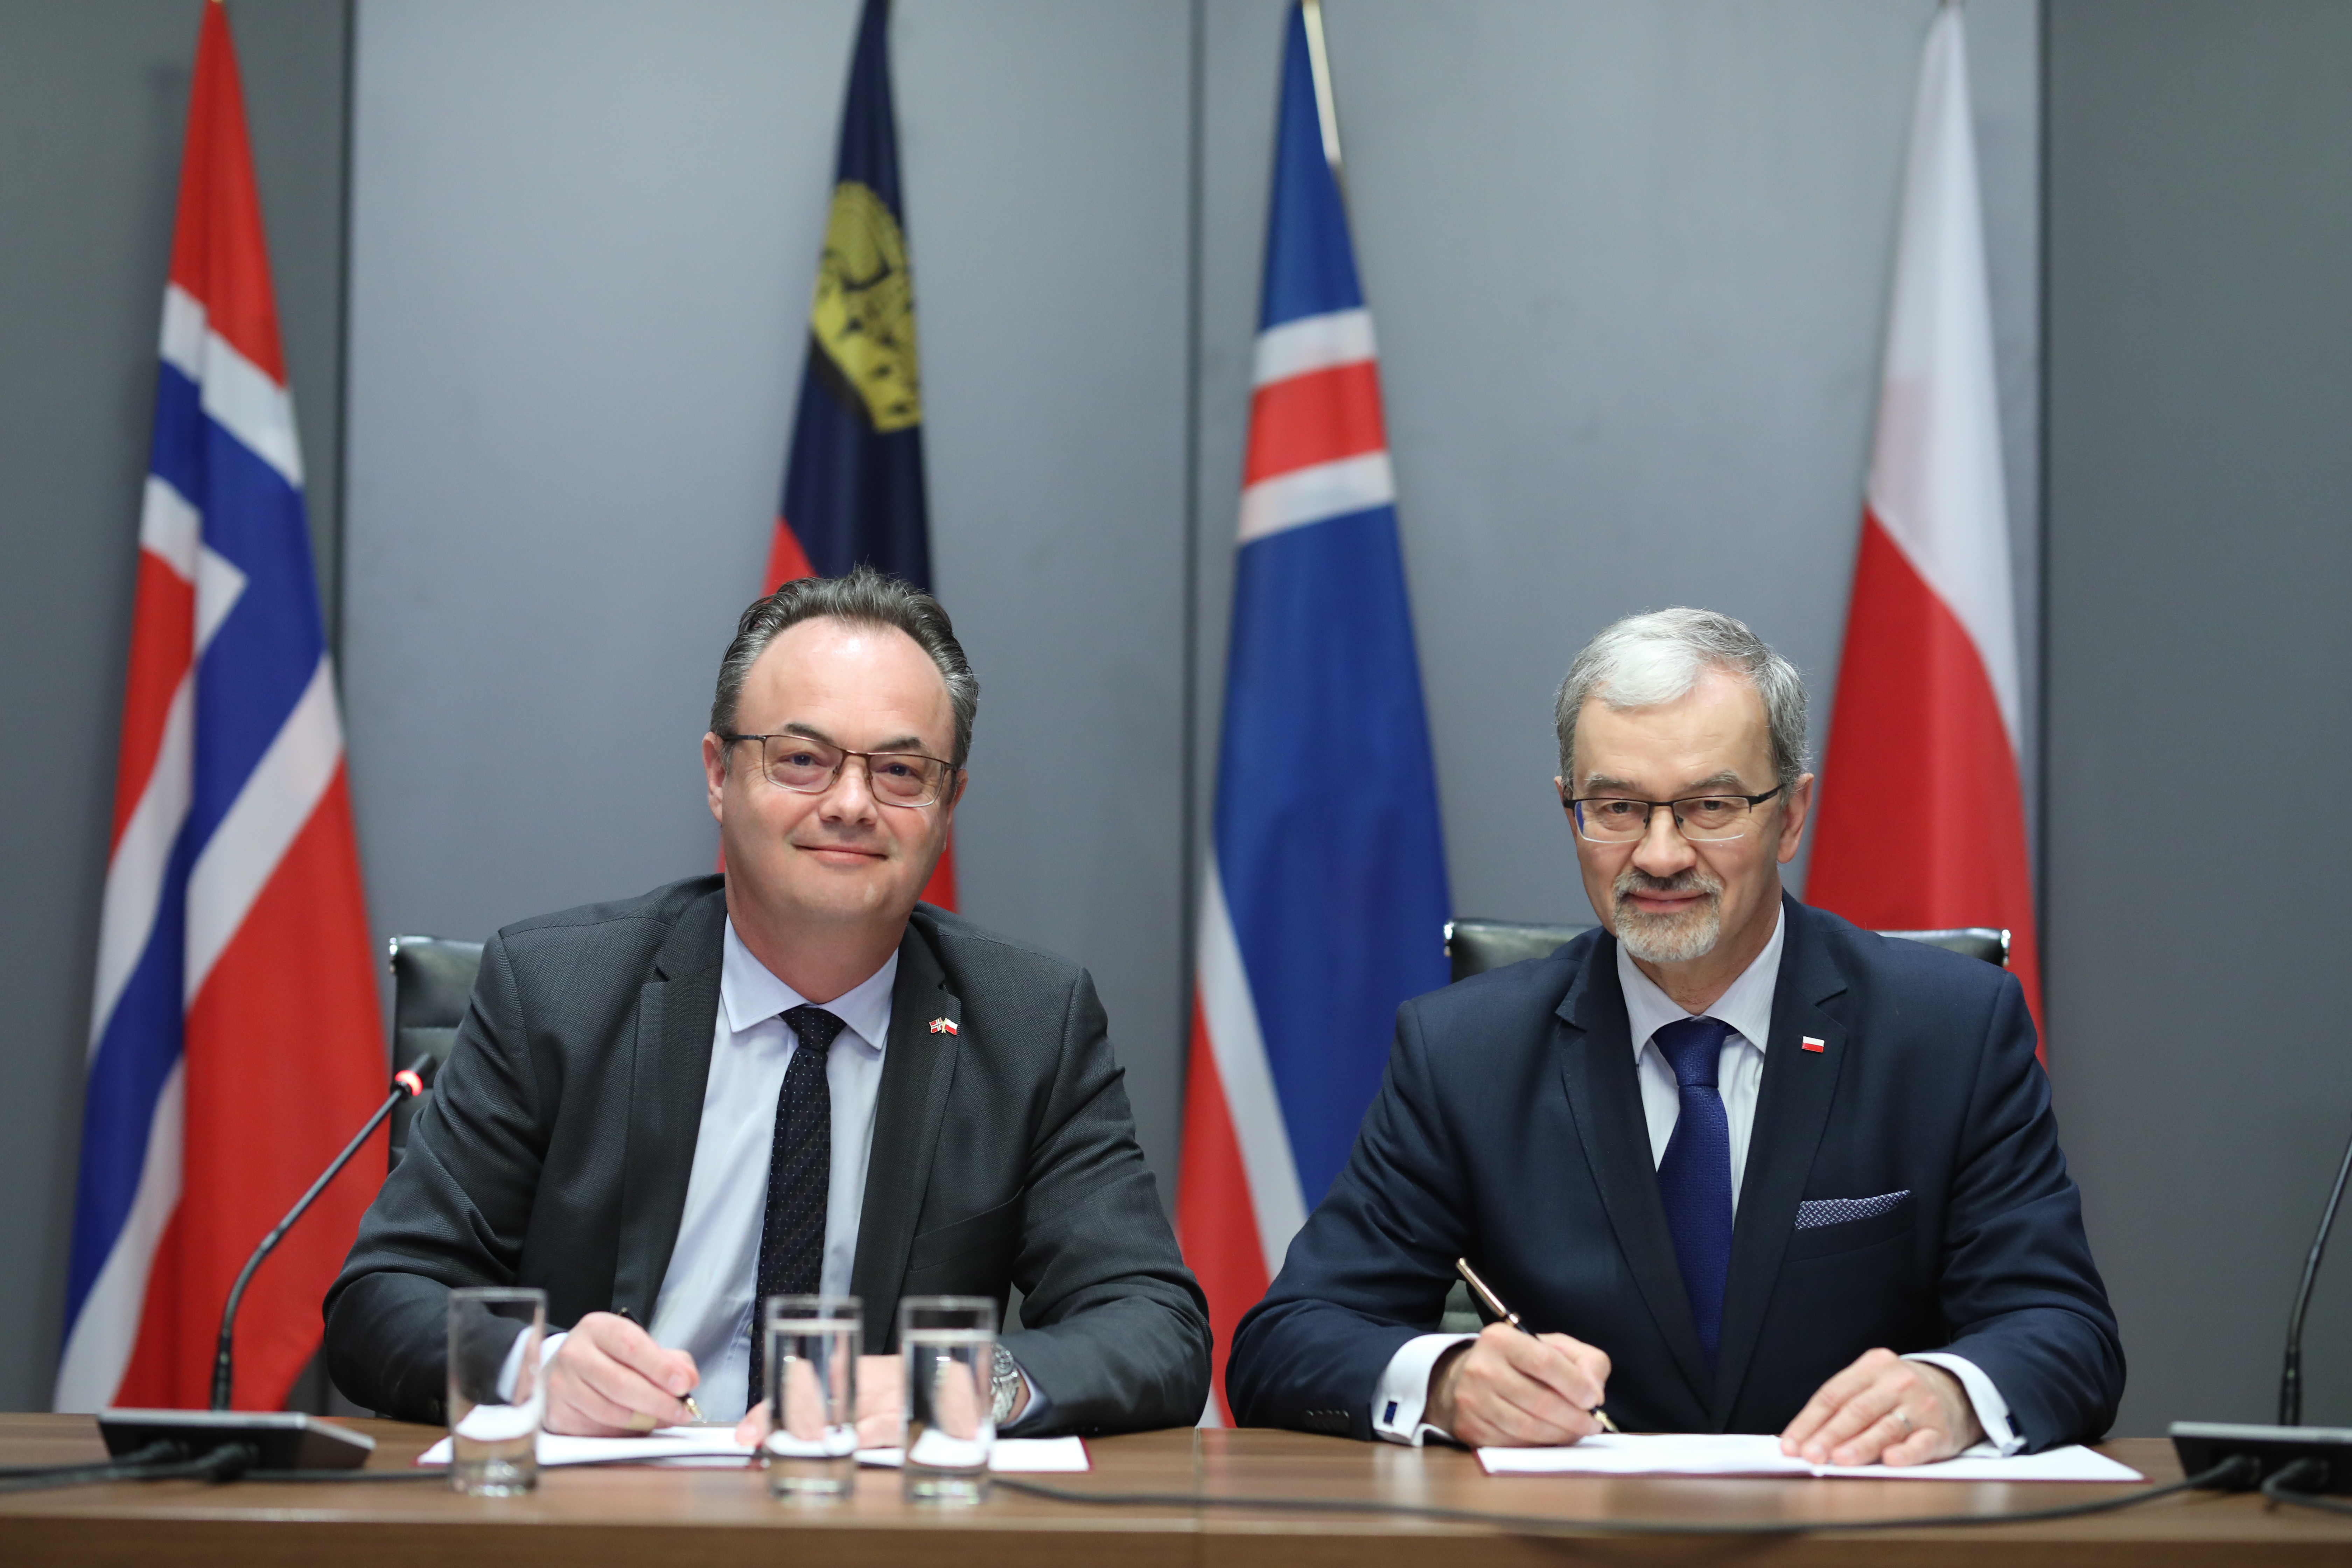 Minister Inwestycji i Rozwoju Jerzy Kwieciński i Ambasador Norwegii Olav Myklebust siedzą przy stole, w dłoniach trzymają pióra. W tle od prawej stoją flagi Polski, Islandii, Liechtensteinu i Norwegii.